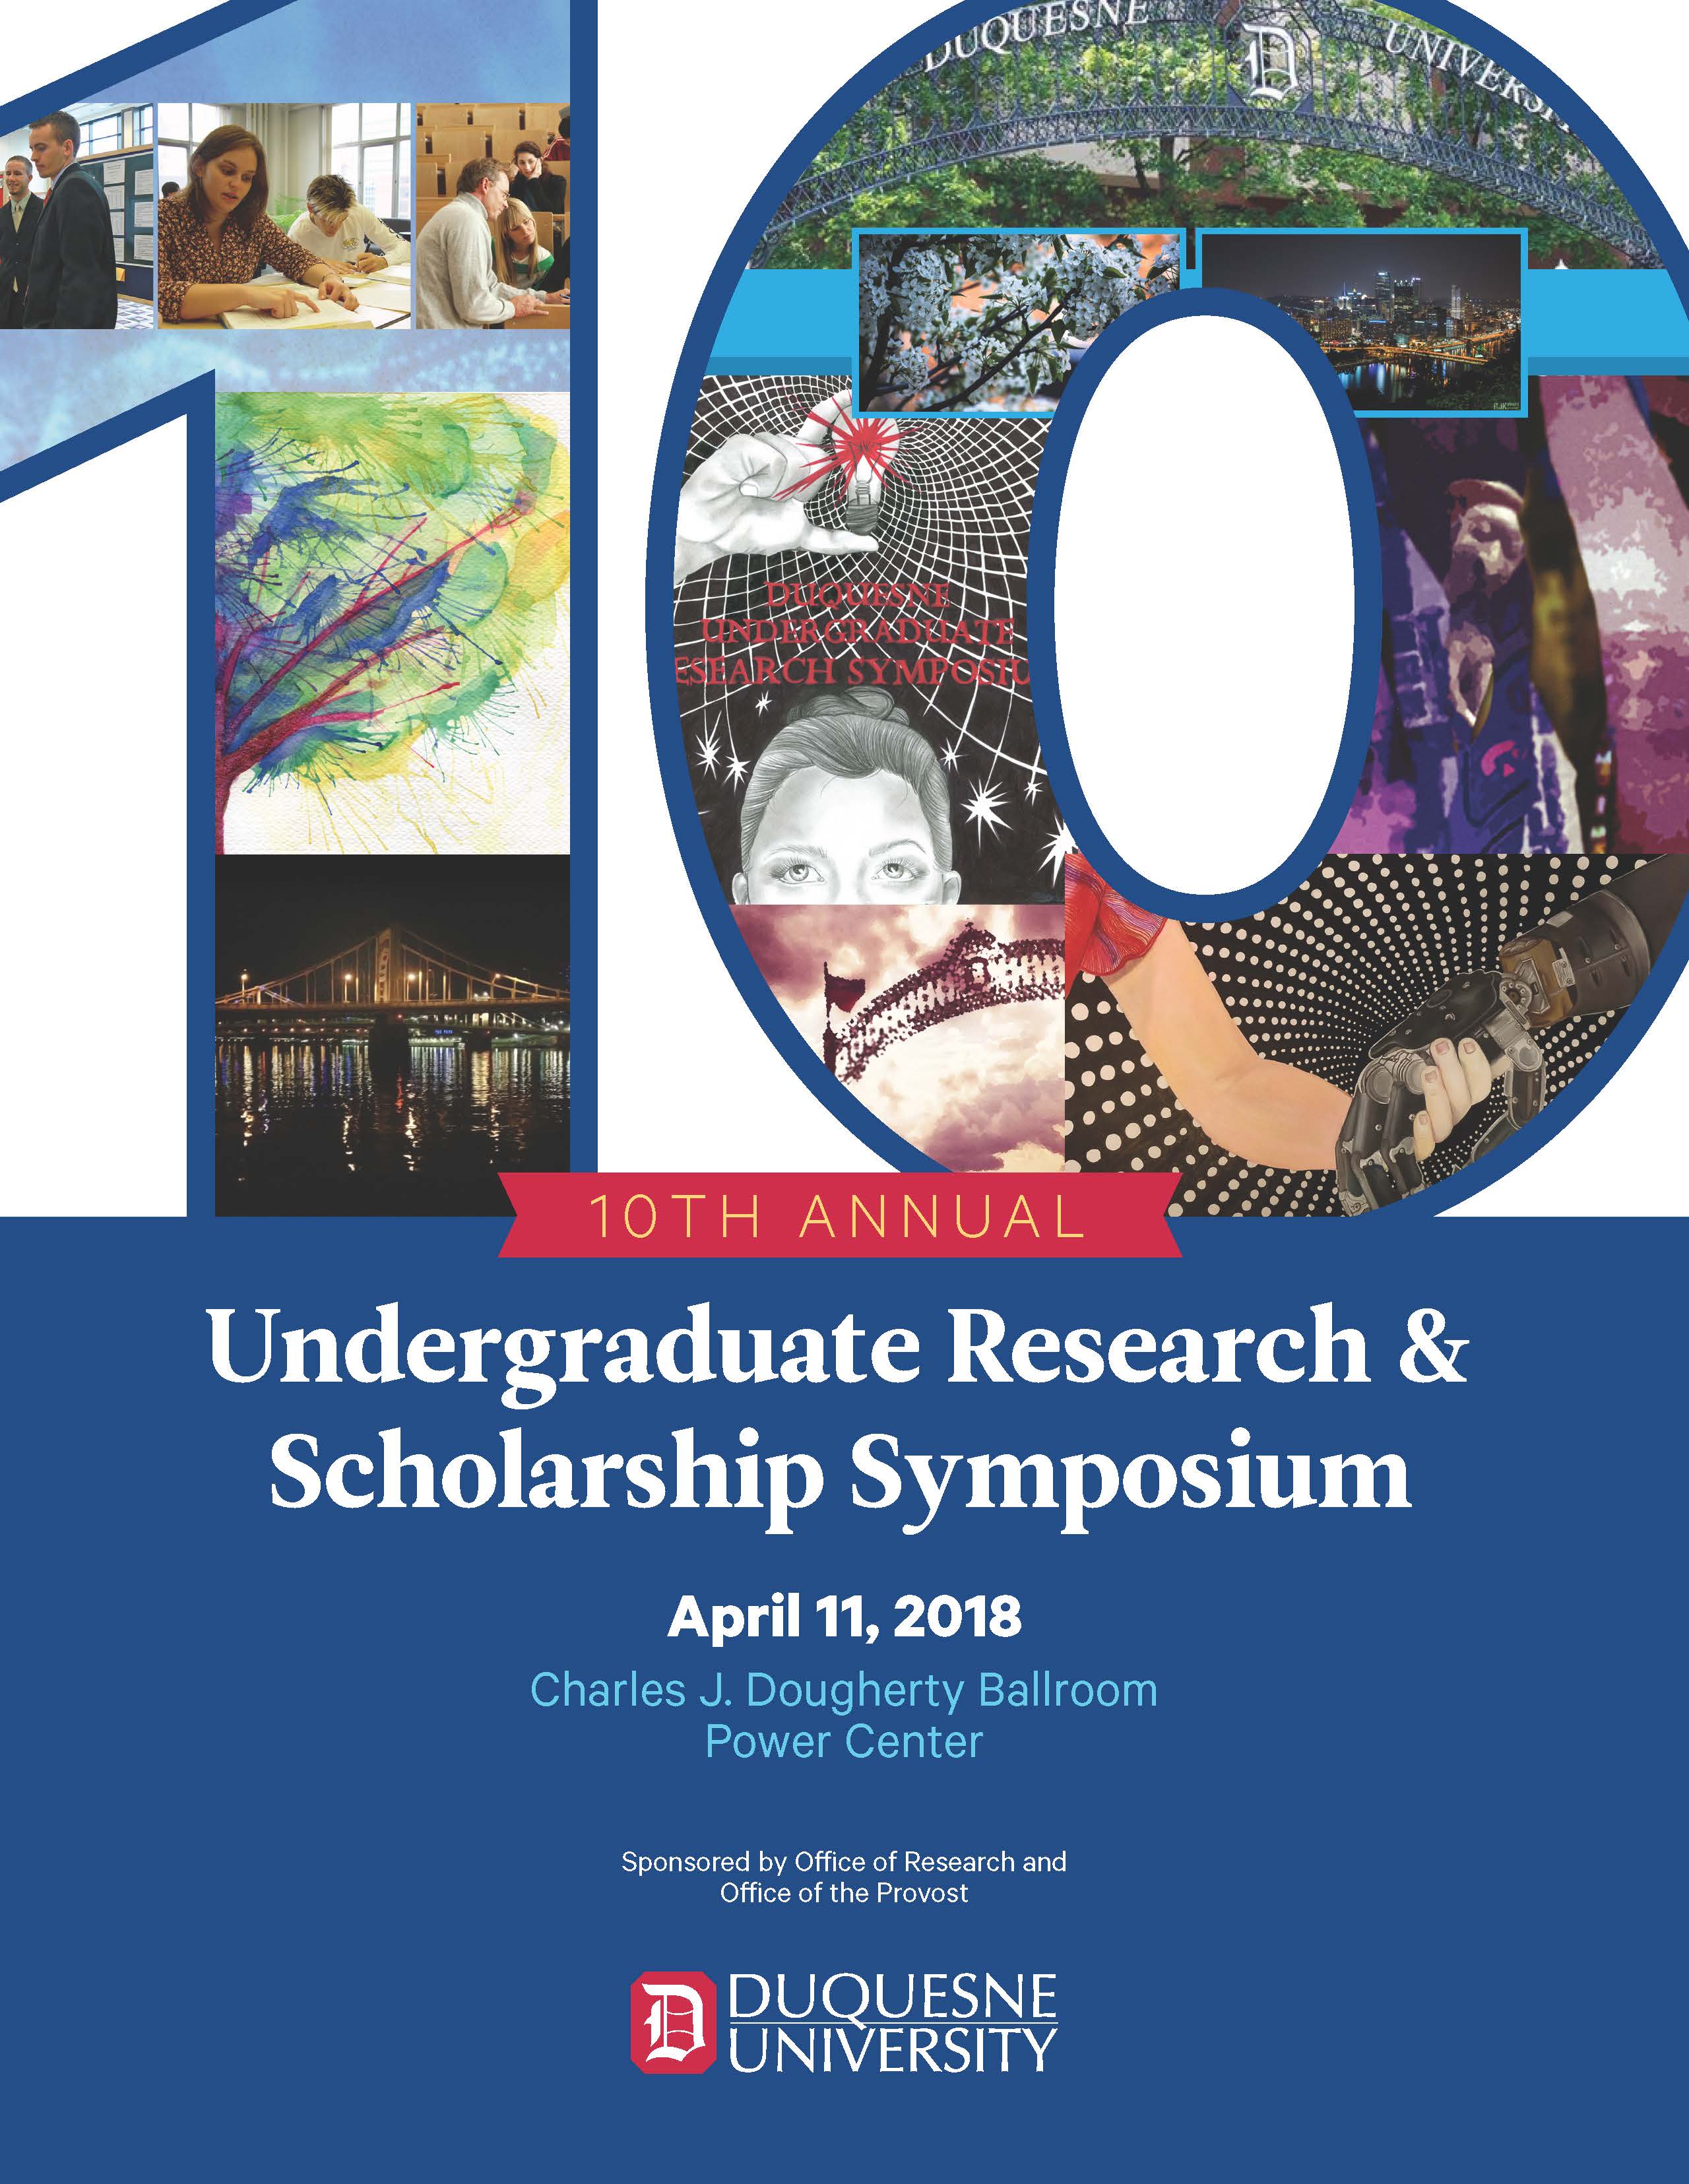 10th Annual Undergraduate Research & Scholarship Symposium